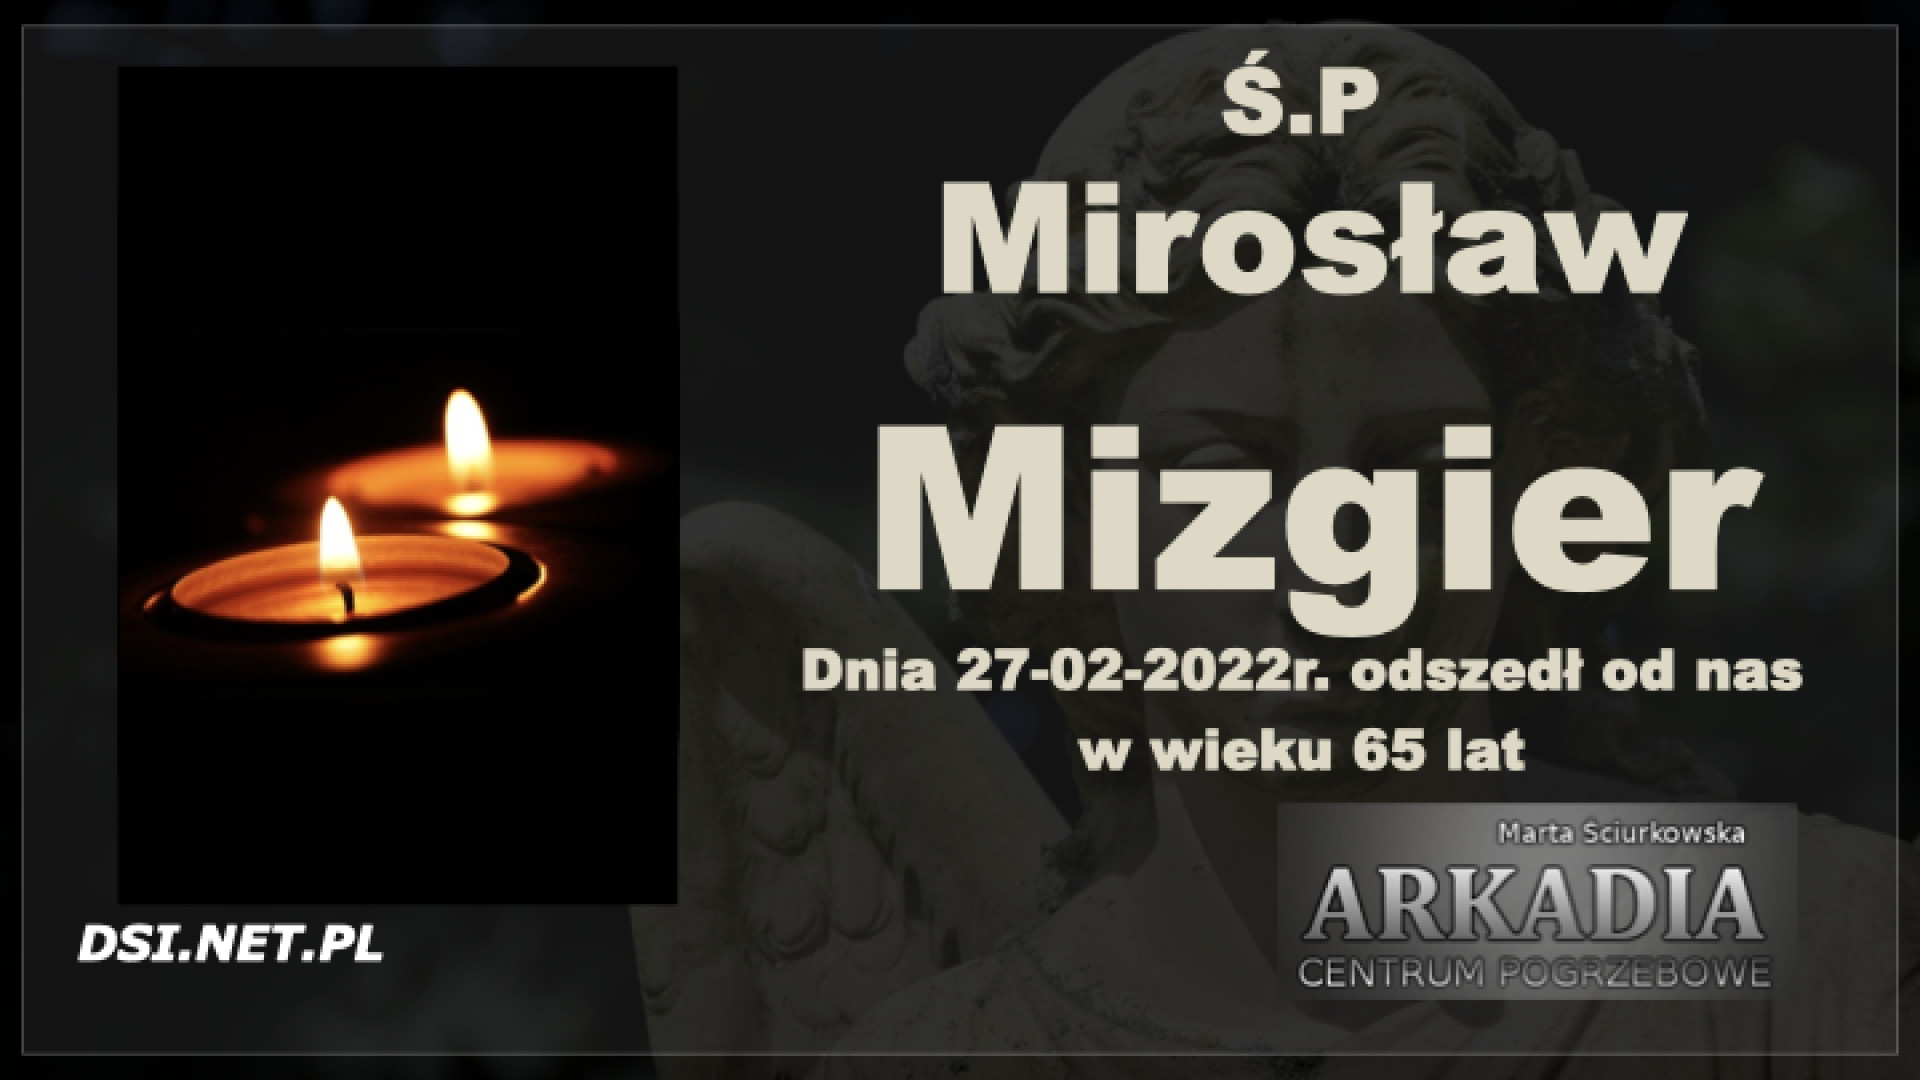 Ś.P. Mirosław Mizgier